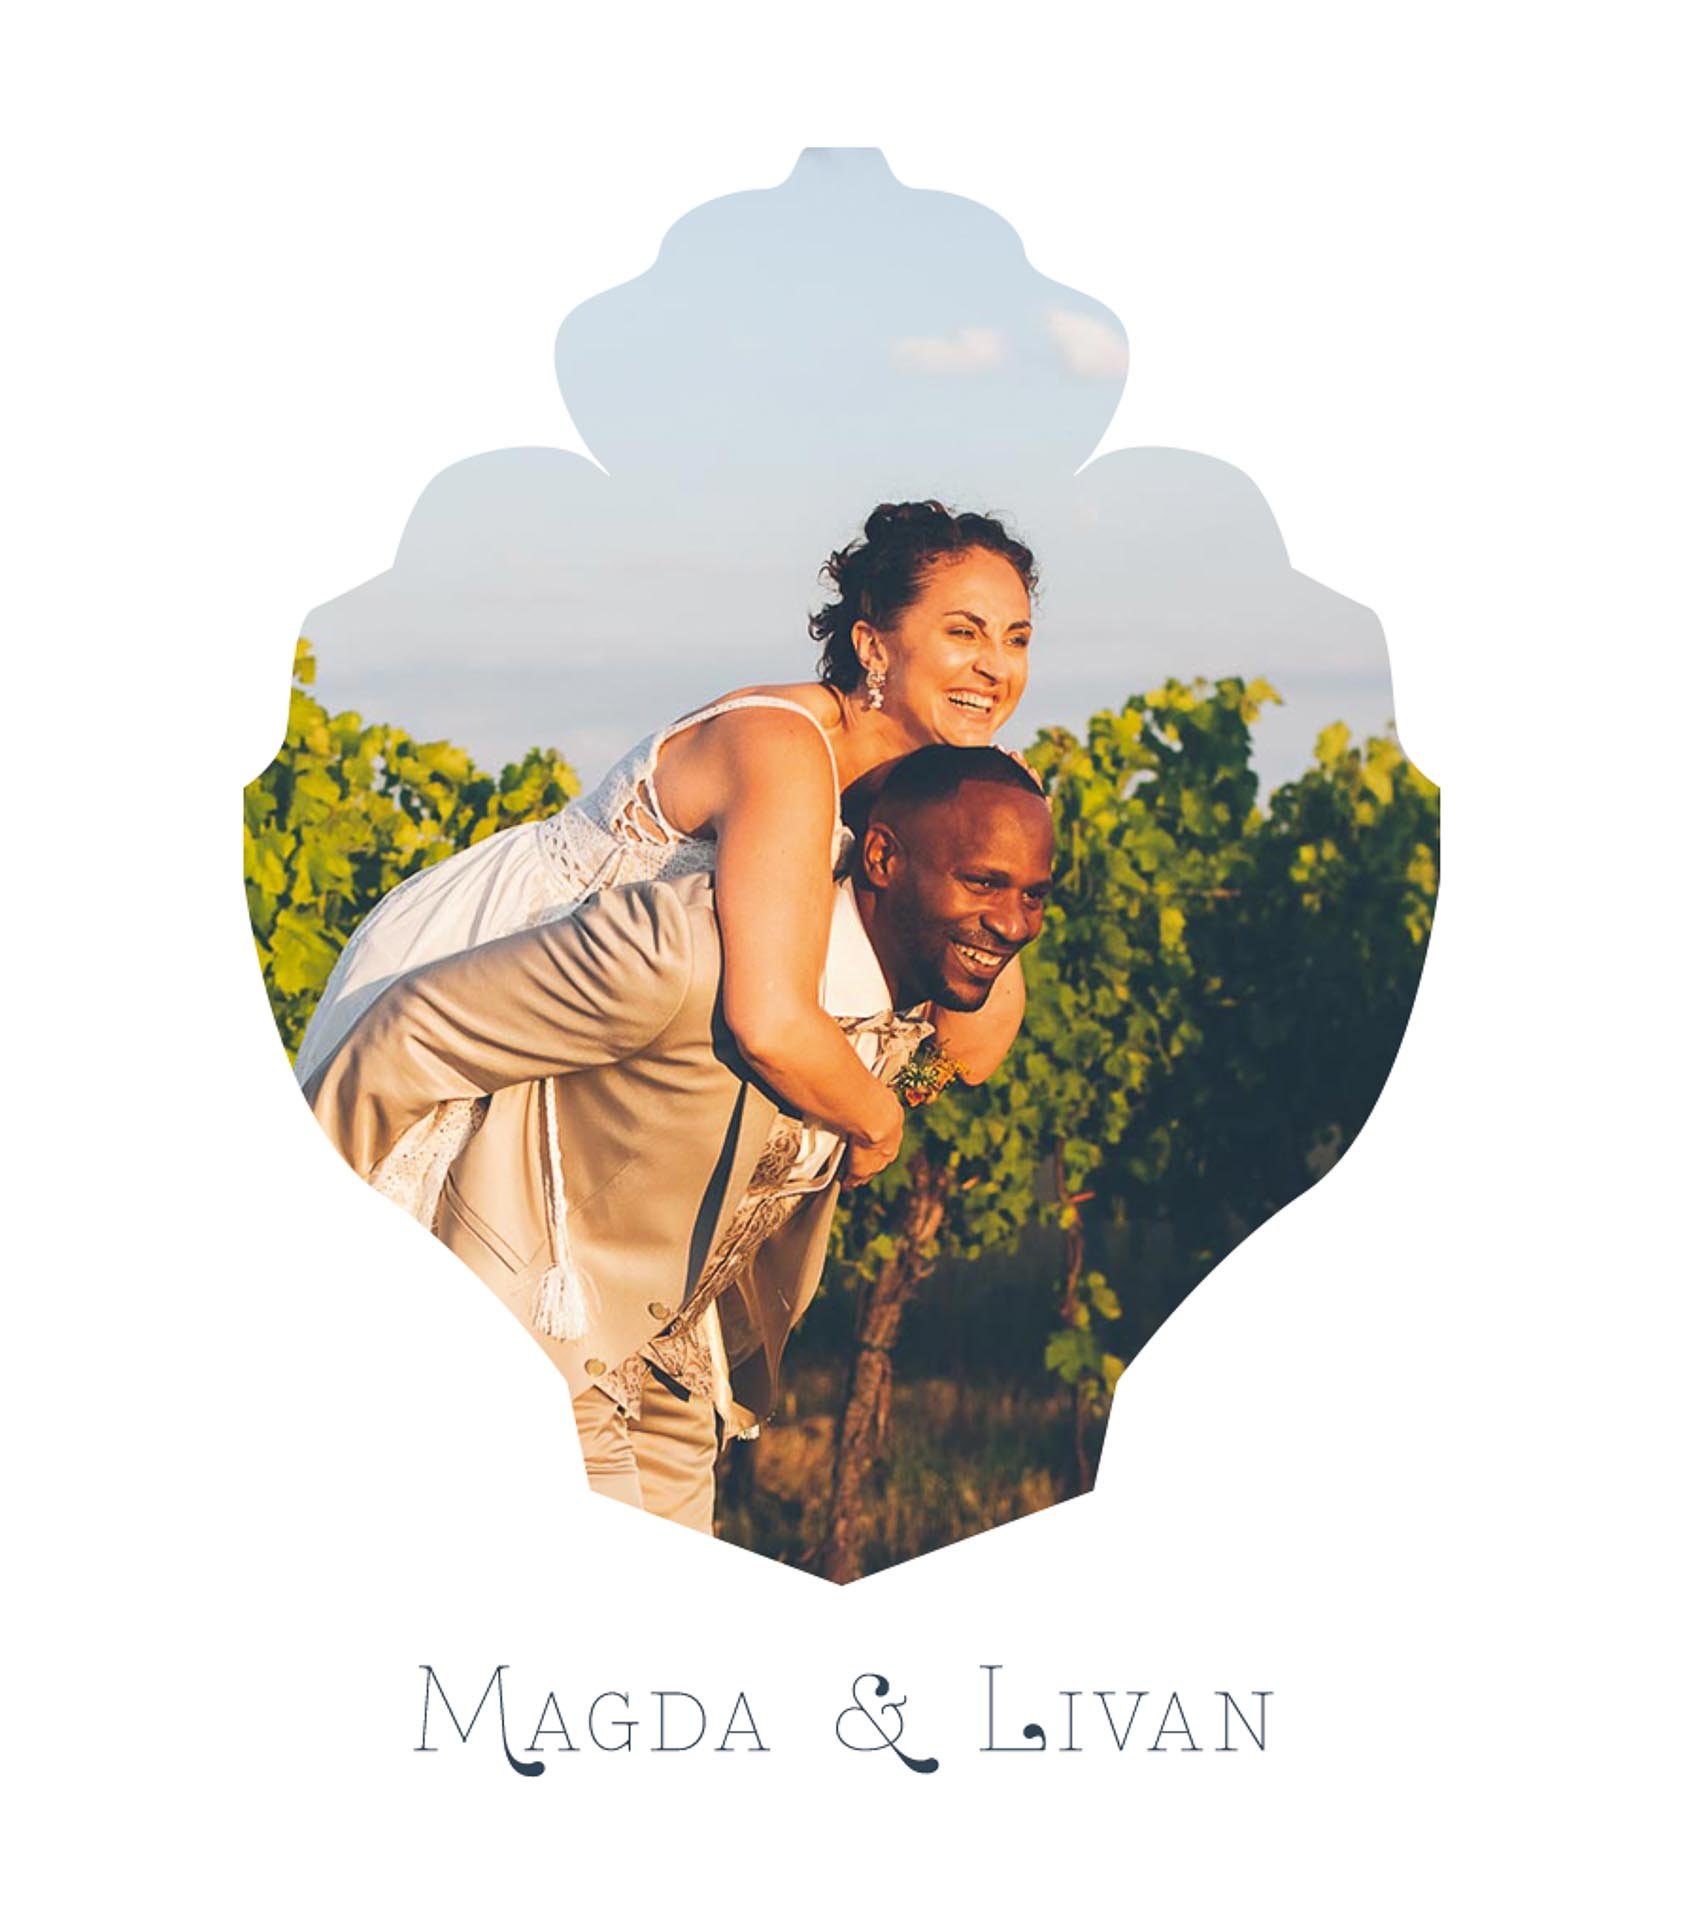 Magda&Livan_Mit Federn & Posaunen_Hochzeitsfotografie1.jpg